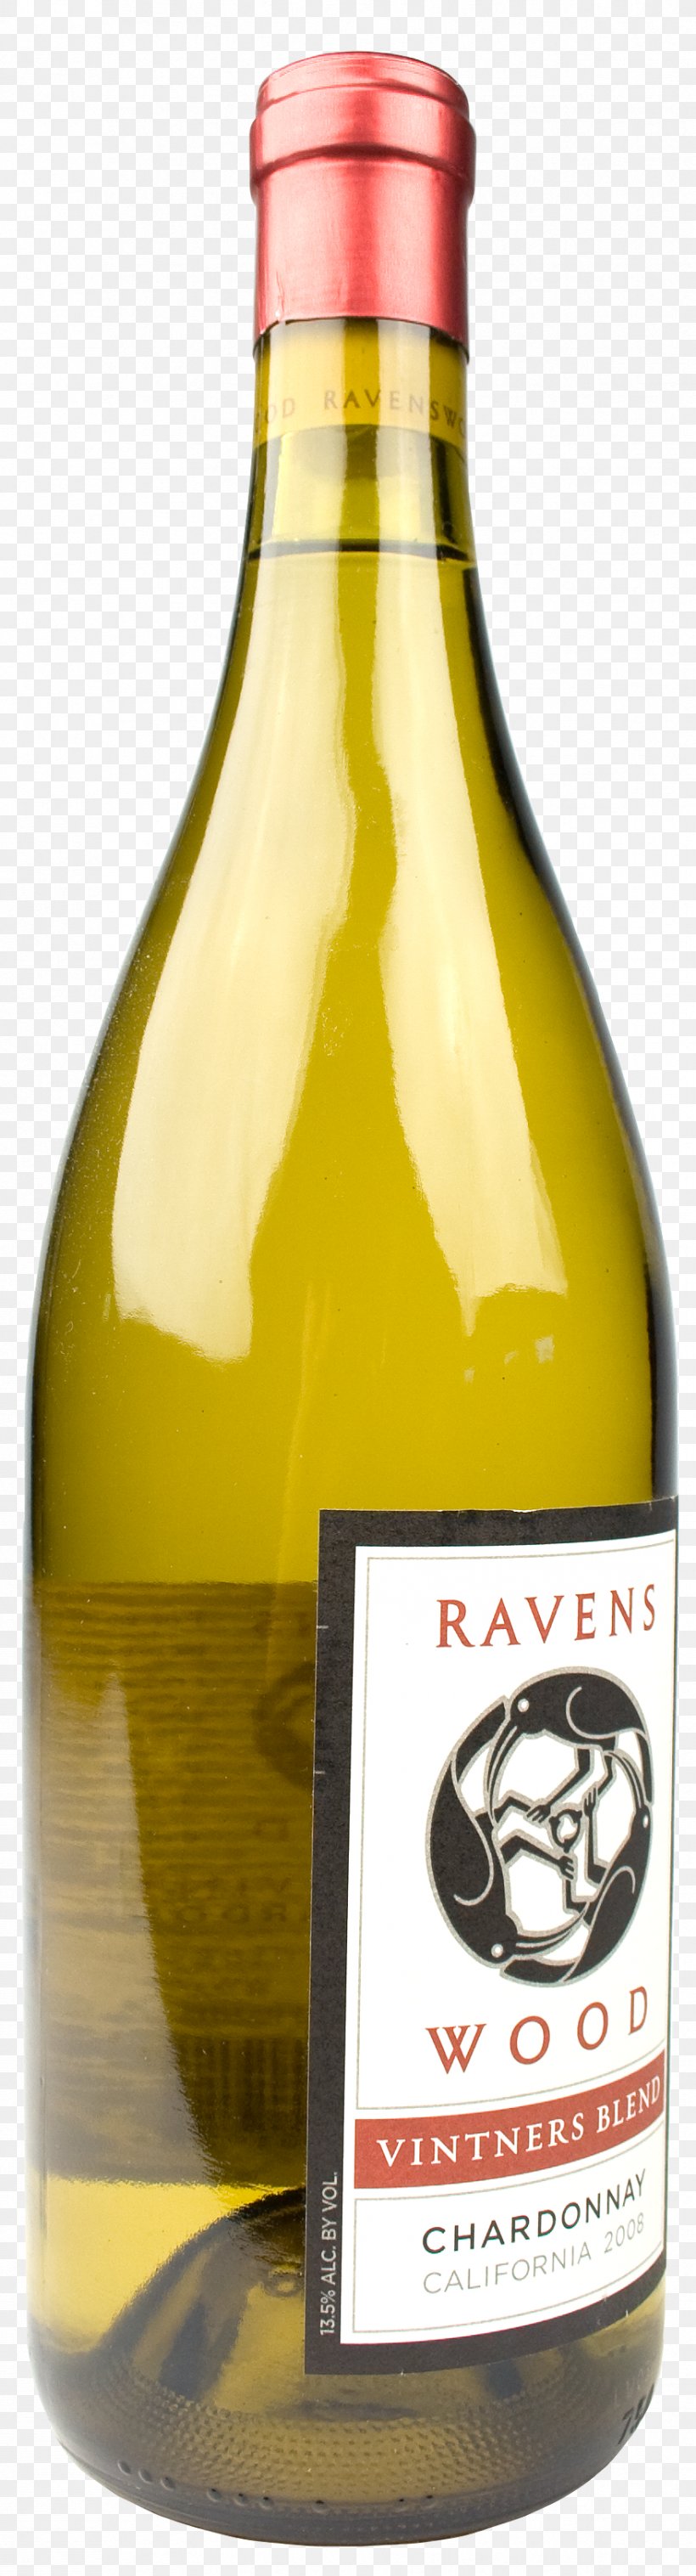 Ravenswood Vintners Blend Zinfandel White Wine Liqueur, PNG, 878x3248px, Wine, Alcoholic Beverage, Bottle, Certificate Of Deposit, Distilled Beverage Download Free